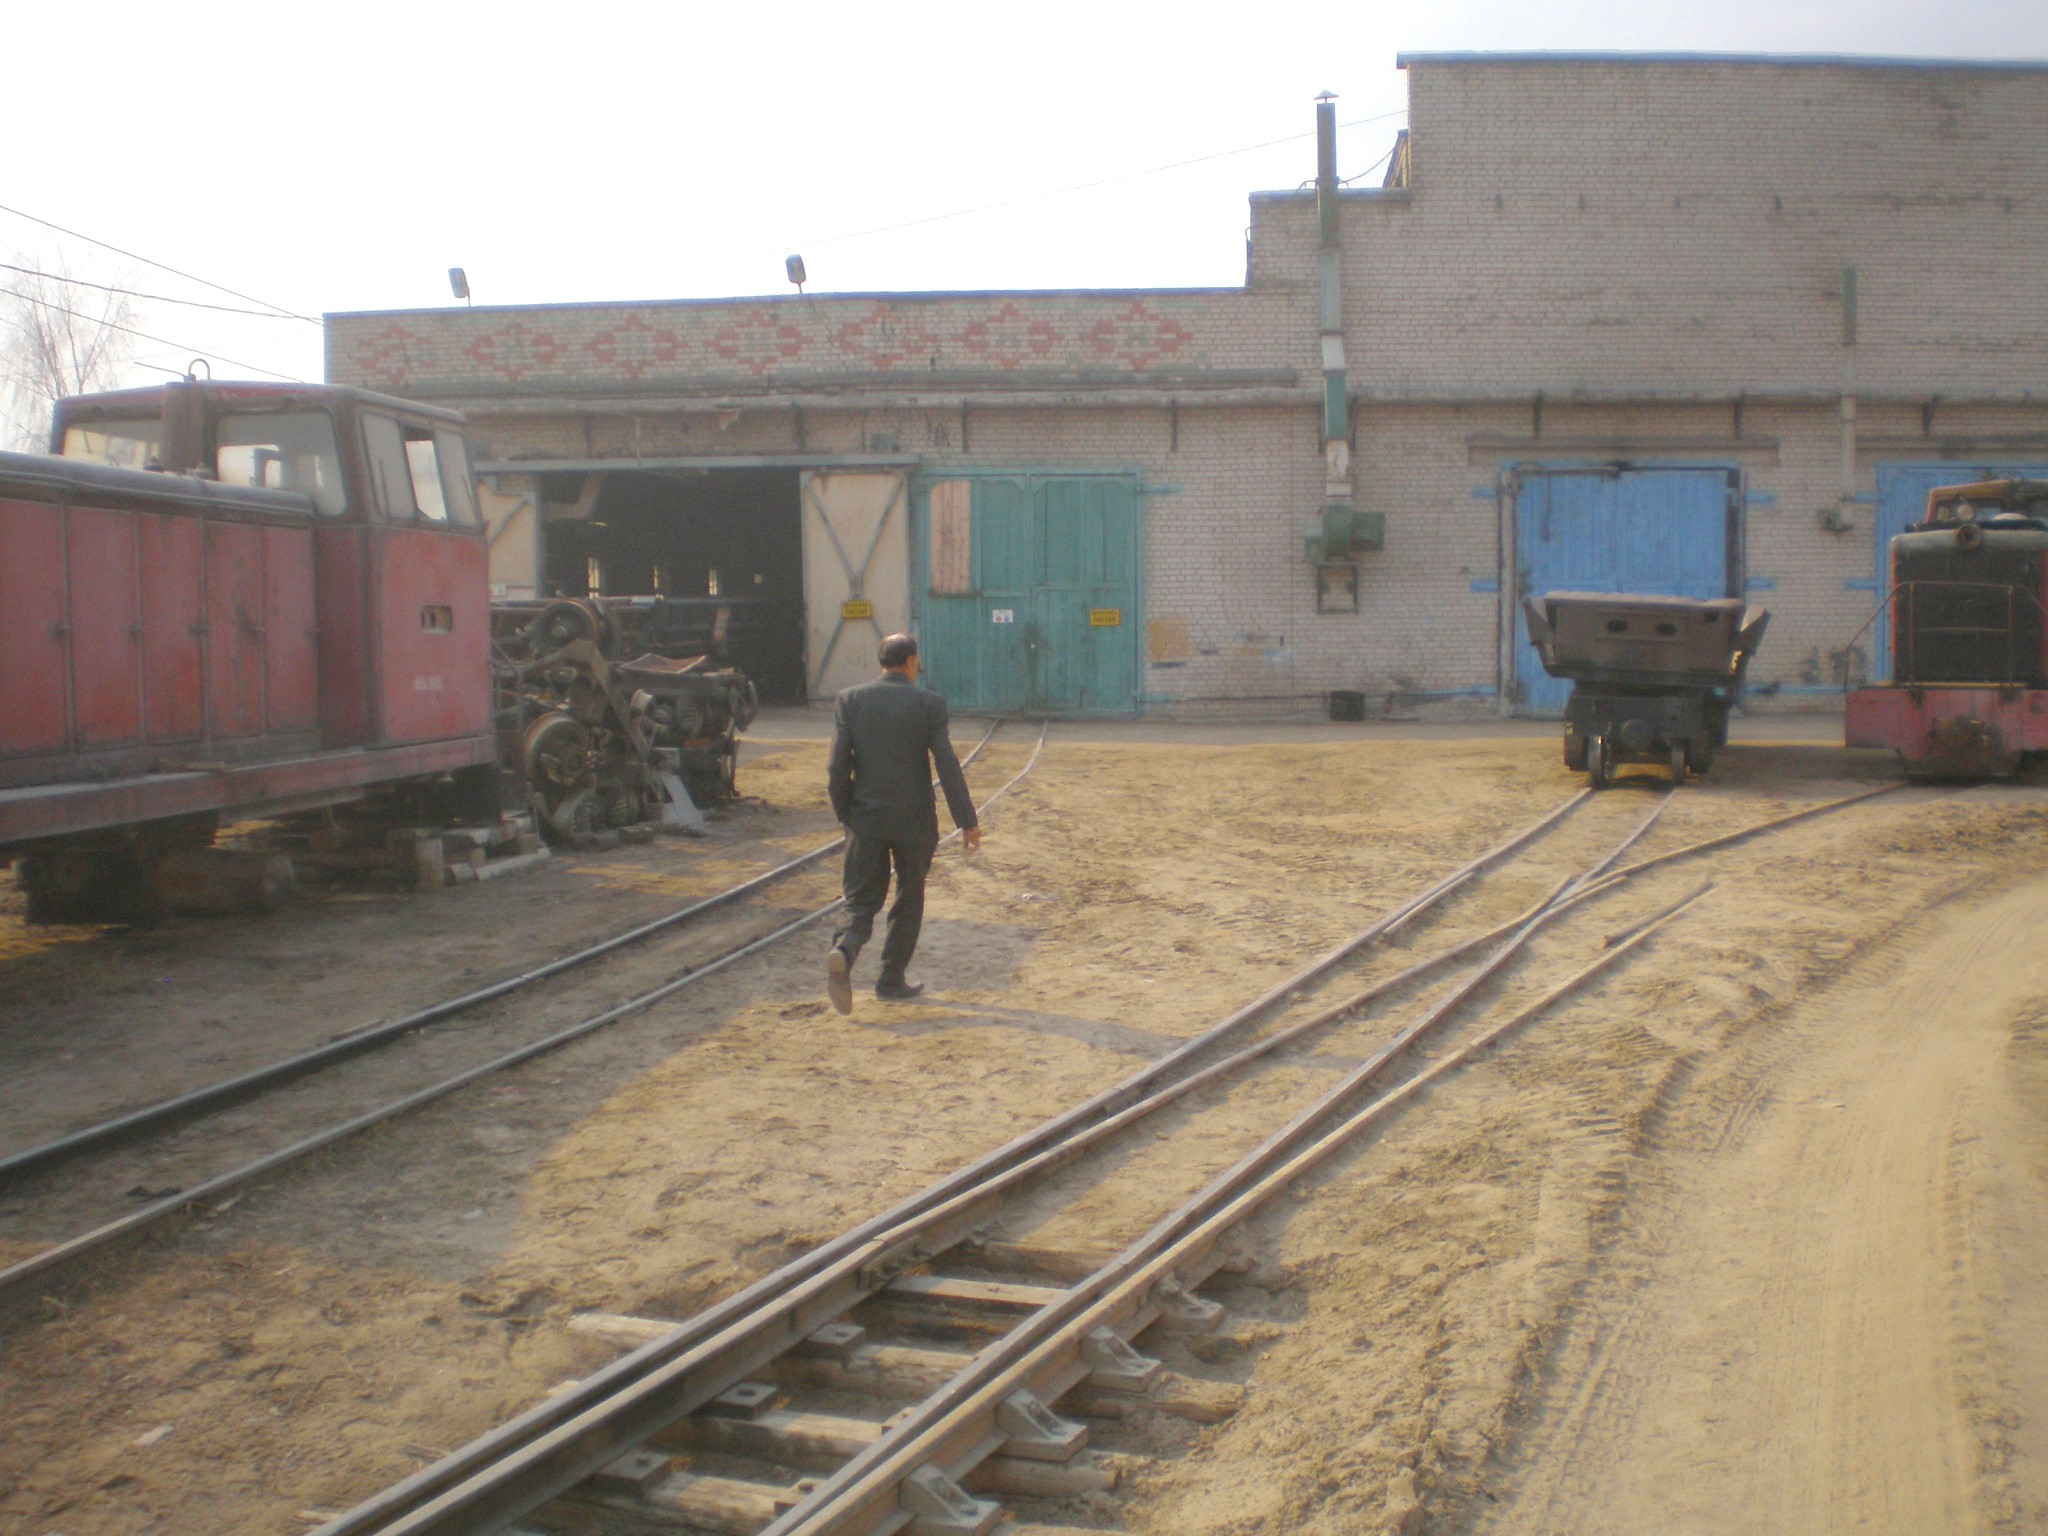 Узкоколейная железная дорога  Тверского комбината строительных материалов №2 — фотографии, сделанные в 2009 году (часть 3)